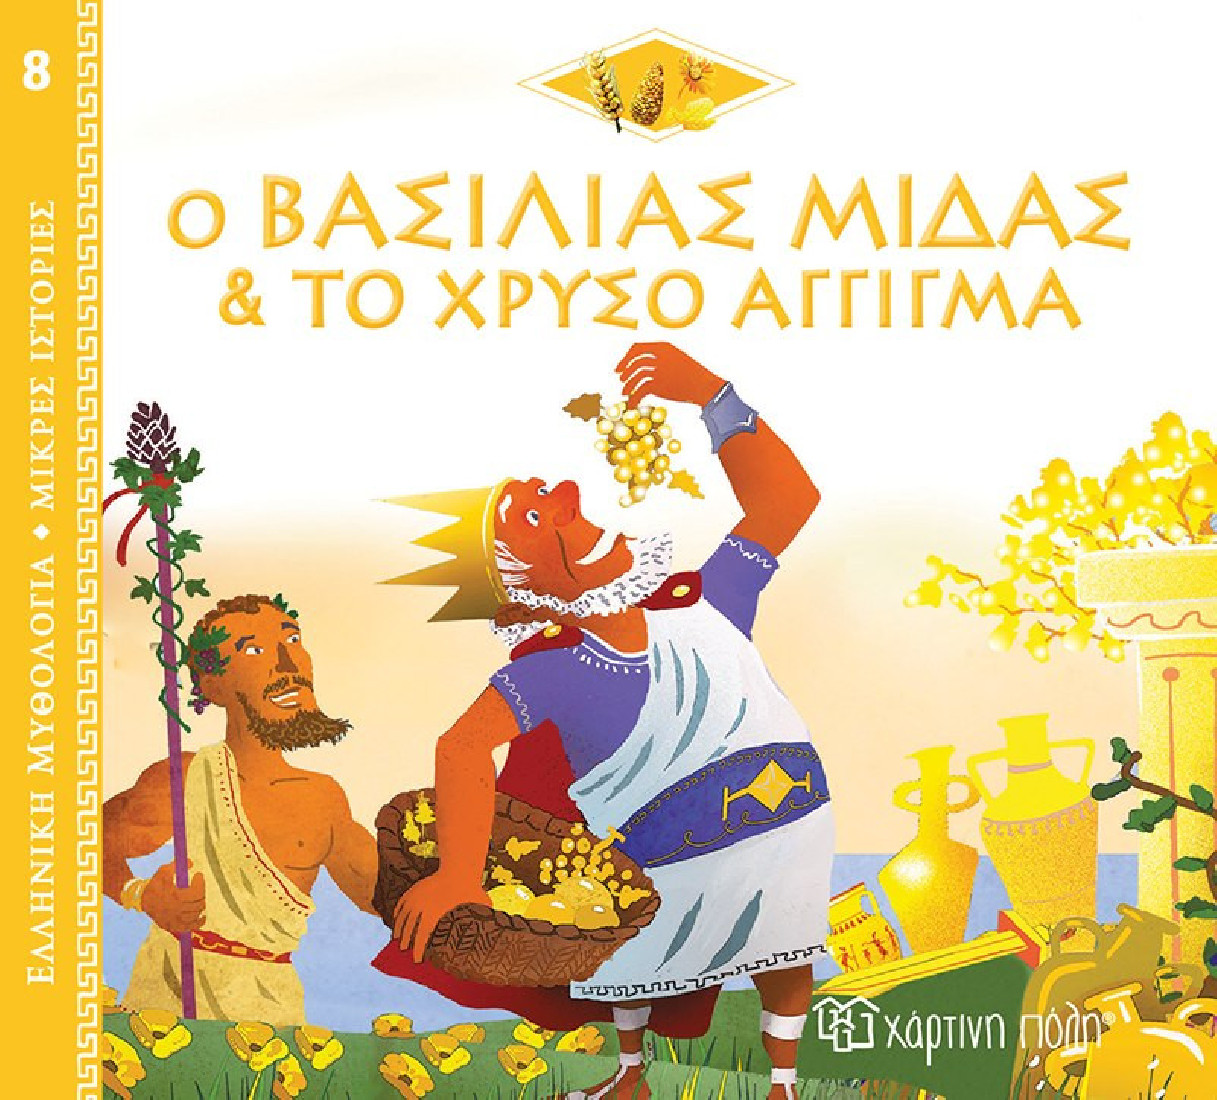 Ελληνική Μυθολογία- Μικρές ιστορίες: Ο Βασιλιάς Μίδας & το χρυσό άγγιγμα